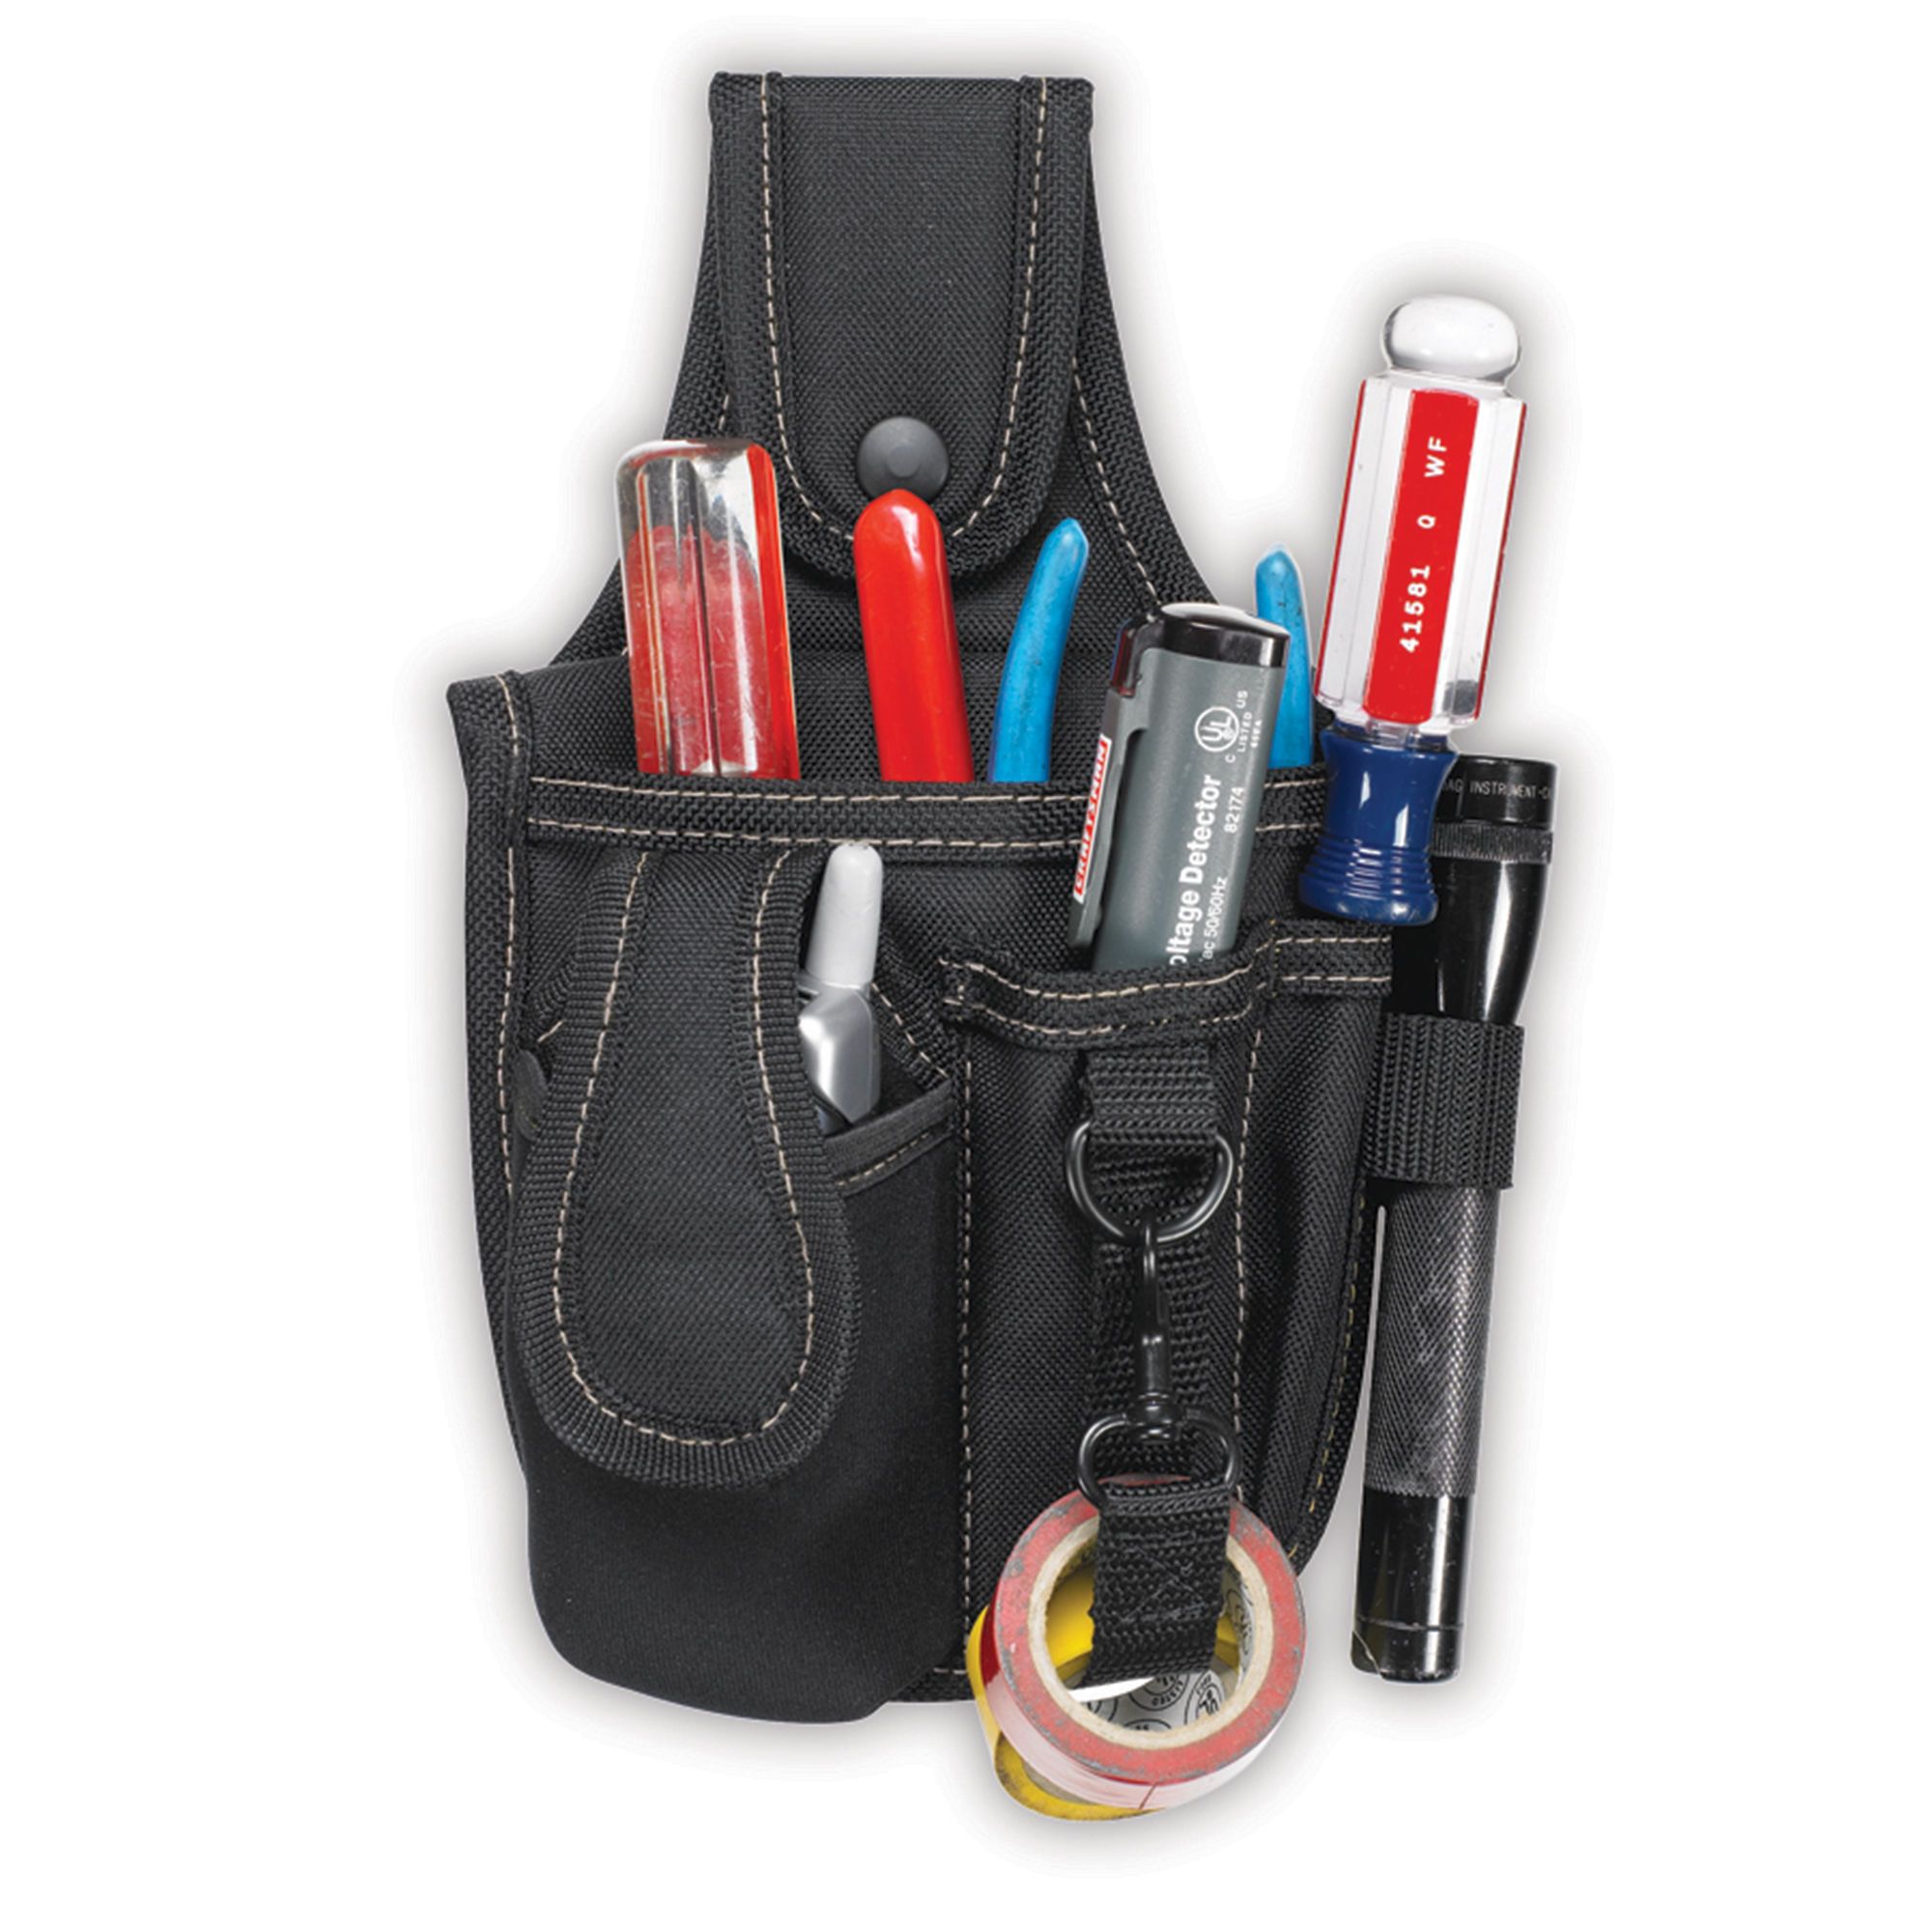 Porte-outils à pochettes multiples et téléphone portable de KUNY'S